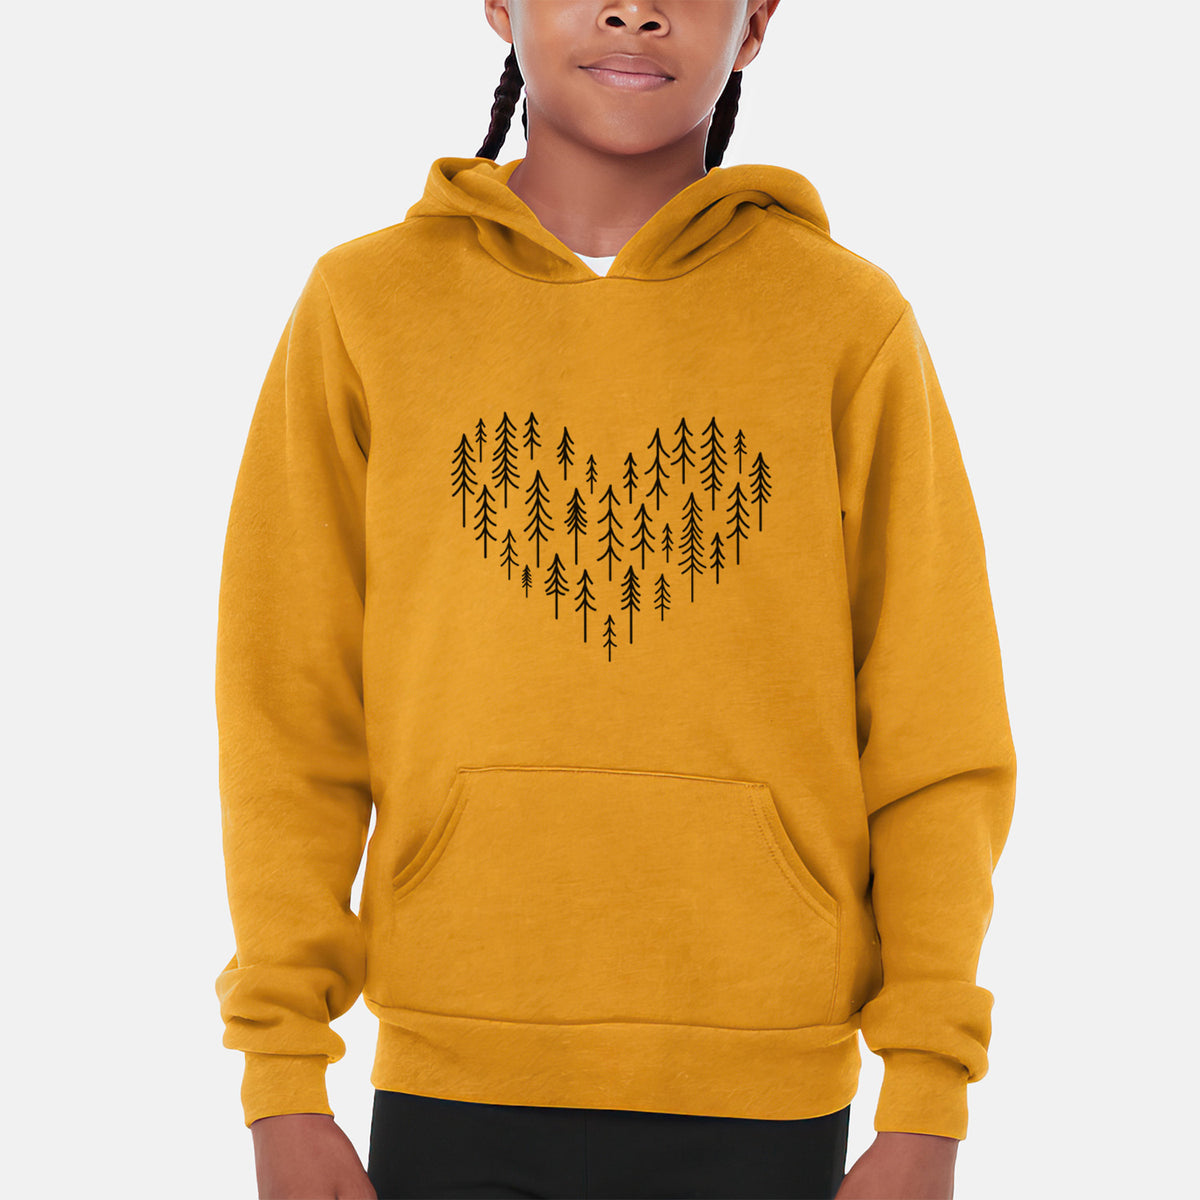 Heart of Trees - Youth Hoodie Sweatshirt